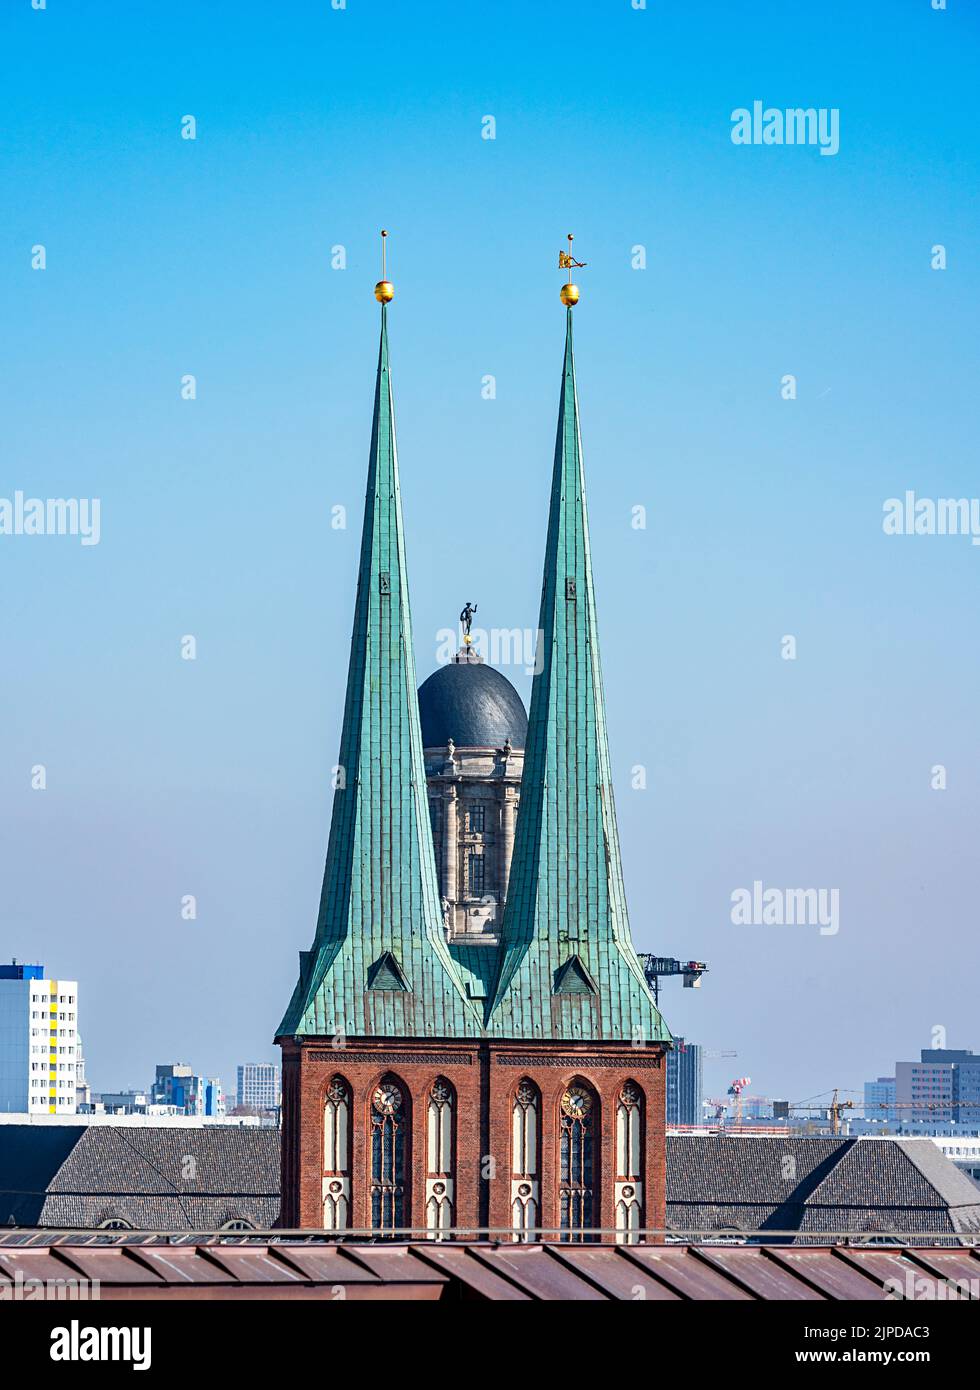 steeple, nikolaikirche, altes stadthaus, molkenmarkt, steeples, nikolaikirches Foto Stock